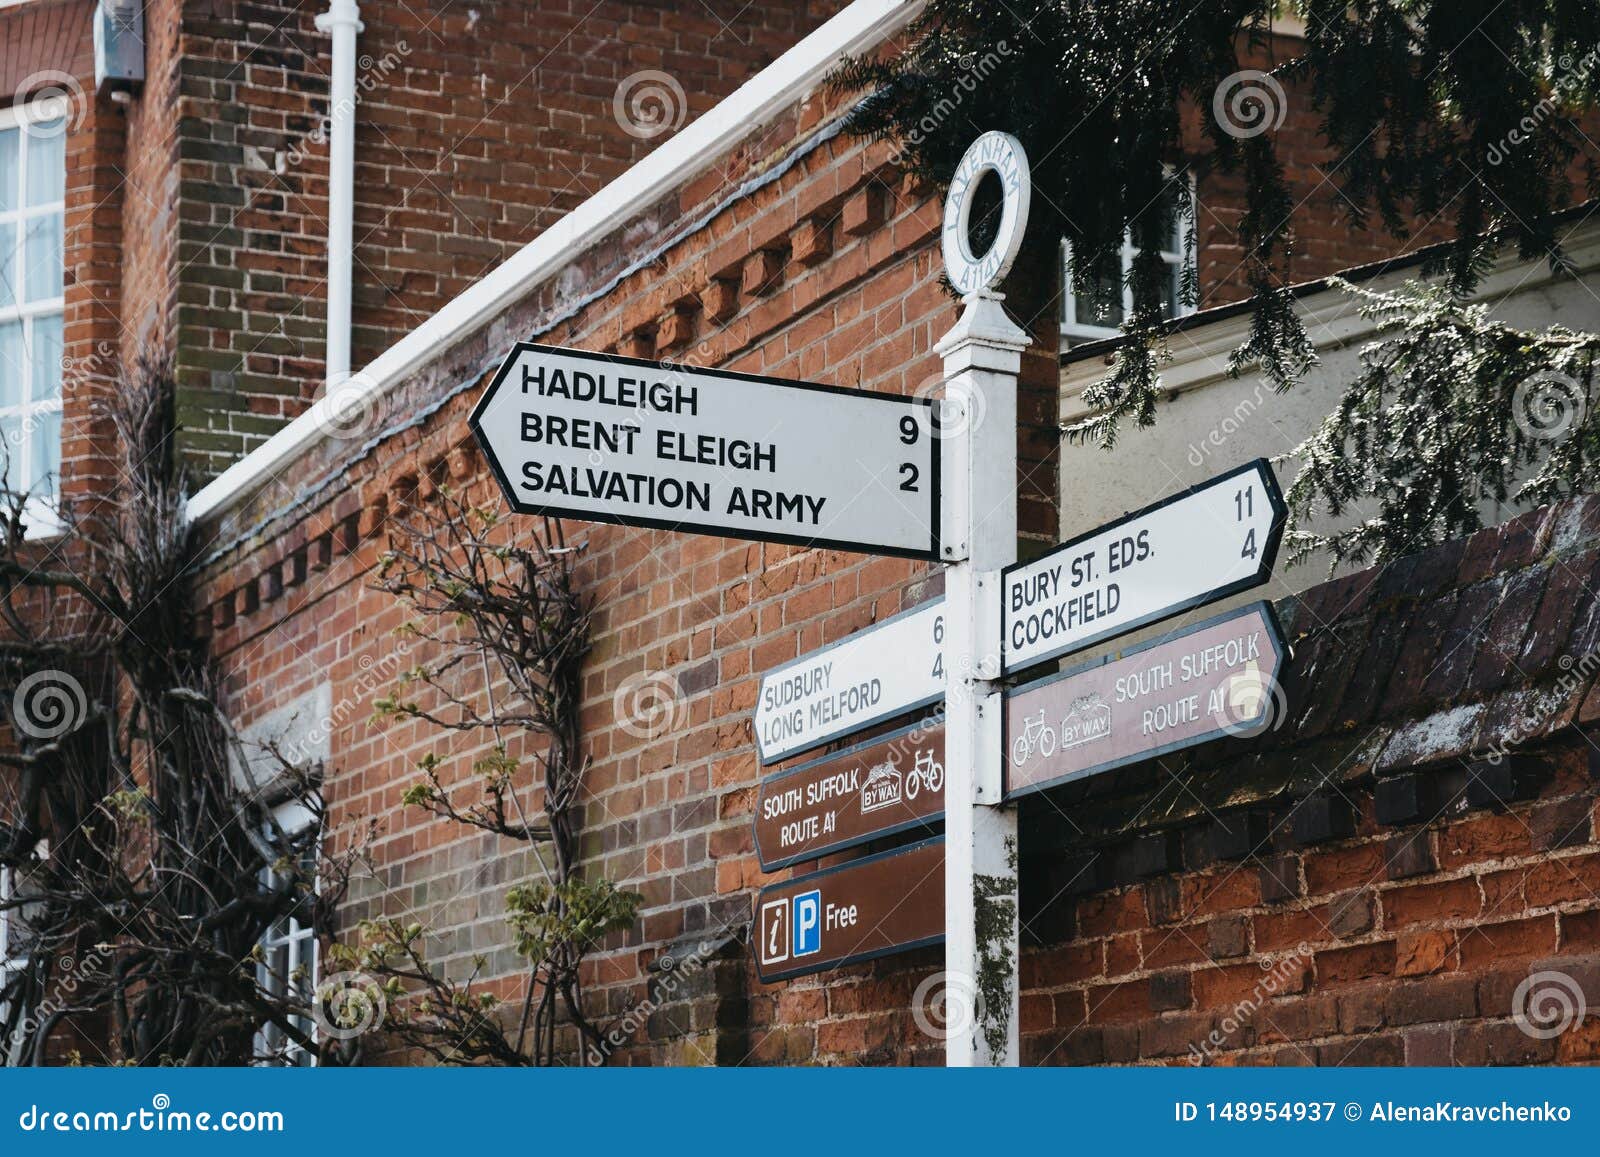 Πινακίδες κατεύθυνσης σε δρόμο στο Lavenham, Nauolk, Αγγλία, Ηνωμένο Βασίλειο. Lavenham, ΗΒ - 19 Απριλίου 2019: Πινακίδες κατεύθυνσης σε ένα δρόμο στο Lavenham, ένα ιστορικό χωριό στο Σάφολκ της Αγγλίας, διάσημο για το Guildhall, το Small Hall και την αρχιτεκτονική του